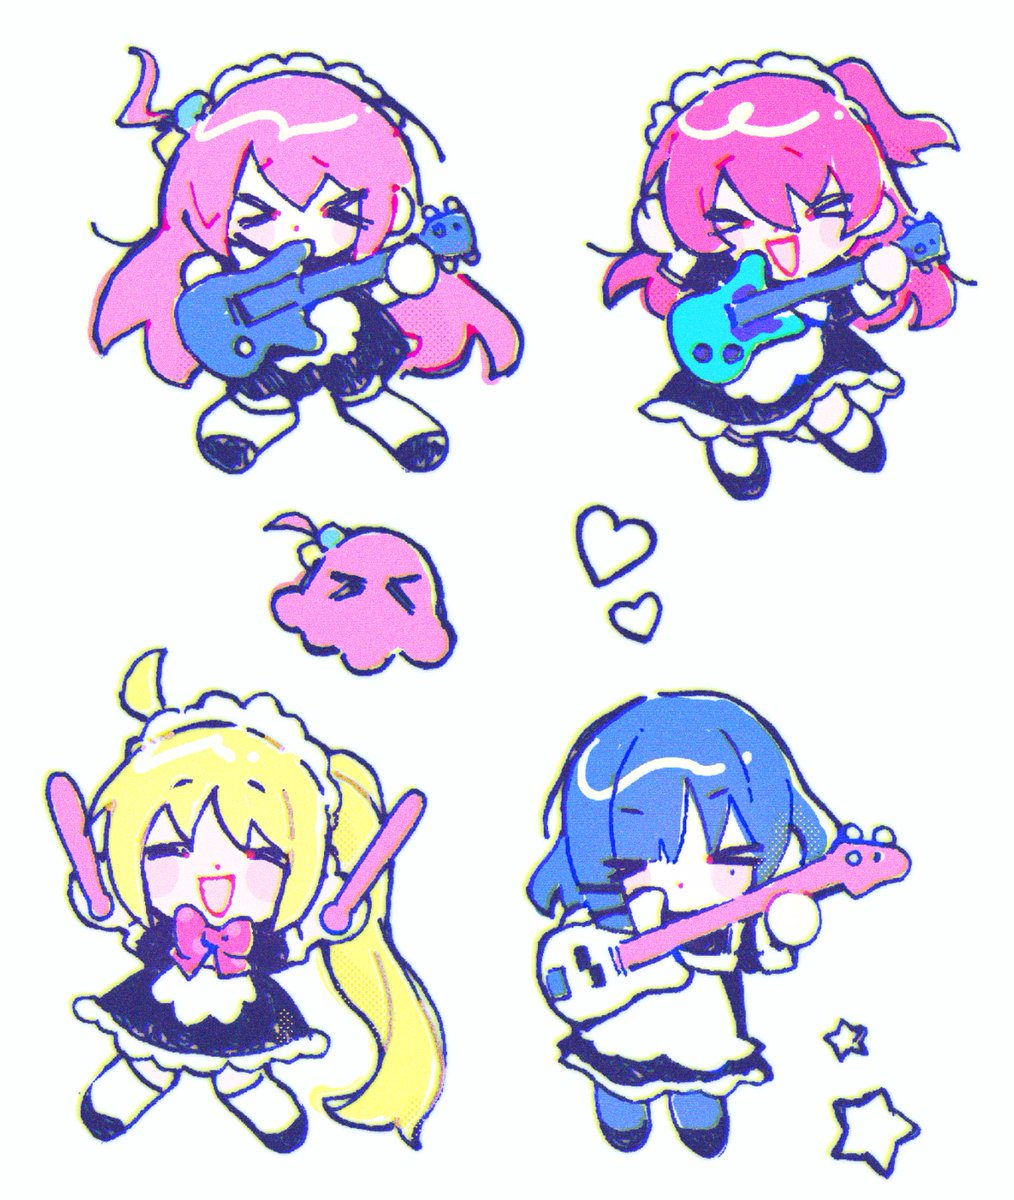 gotou hitori ,ijichi nijika multiple girls pink hair instrument blonde hair 4girls long hair guitar  illustration images